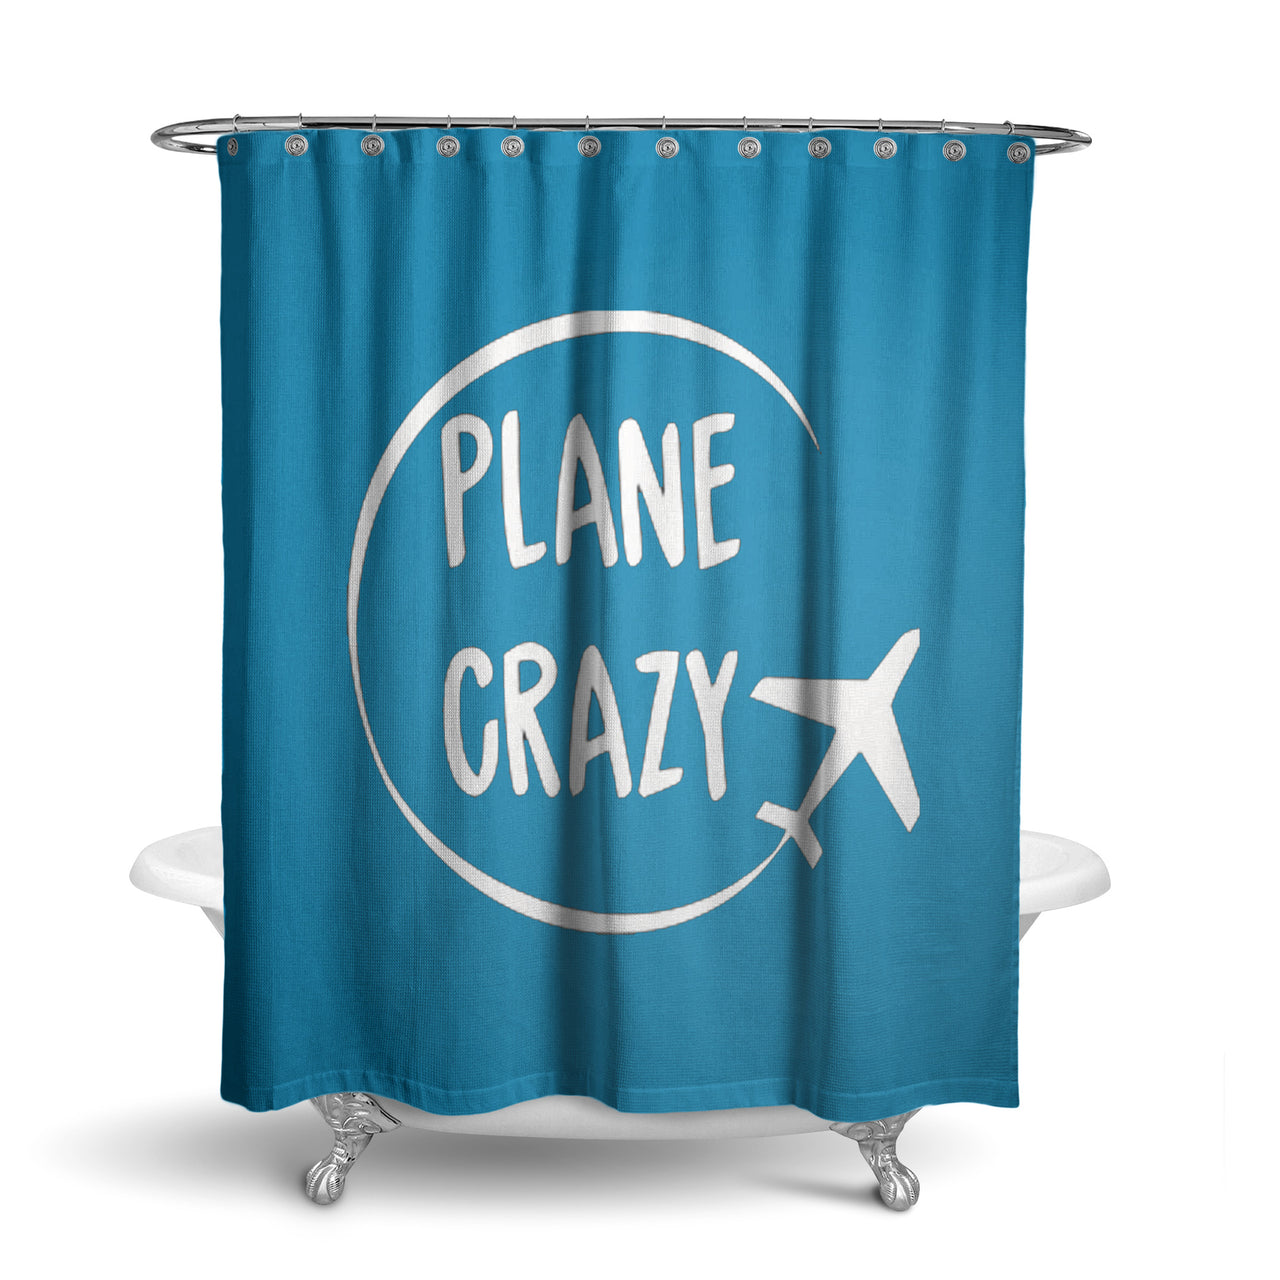 Plane Crazy Designed Shower Curtains